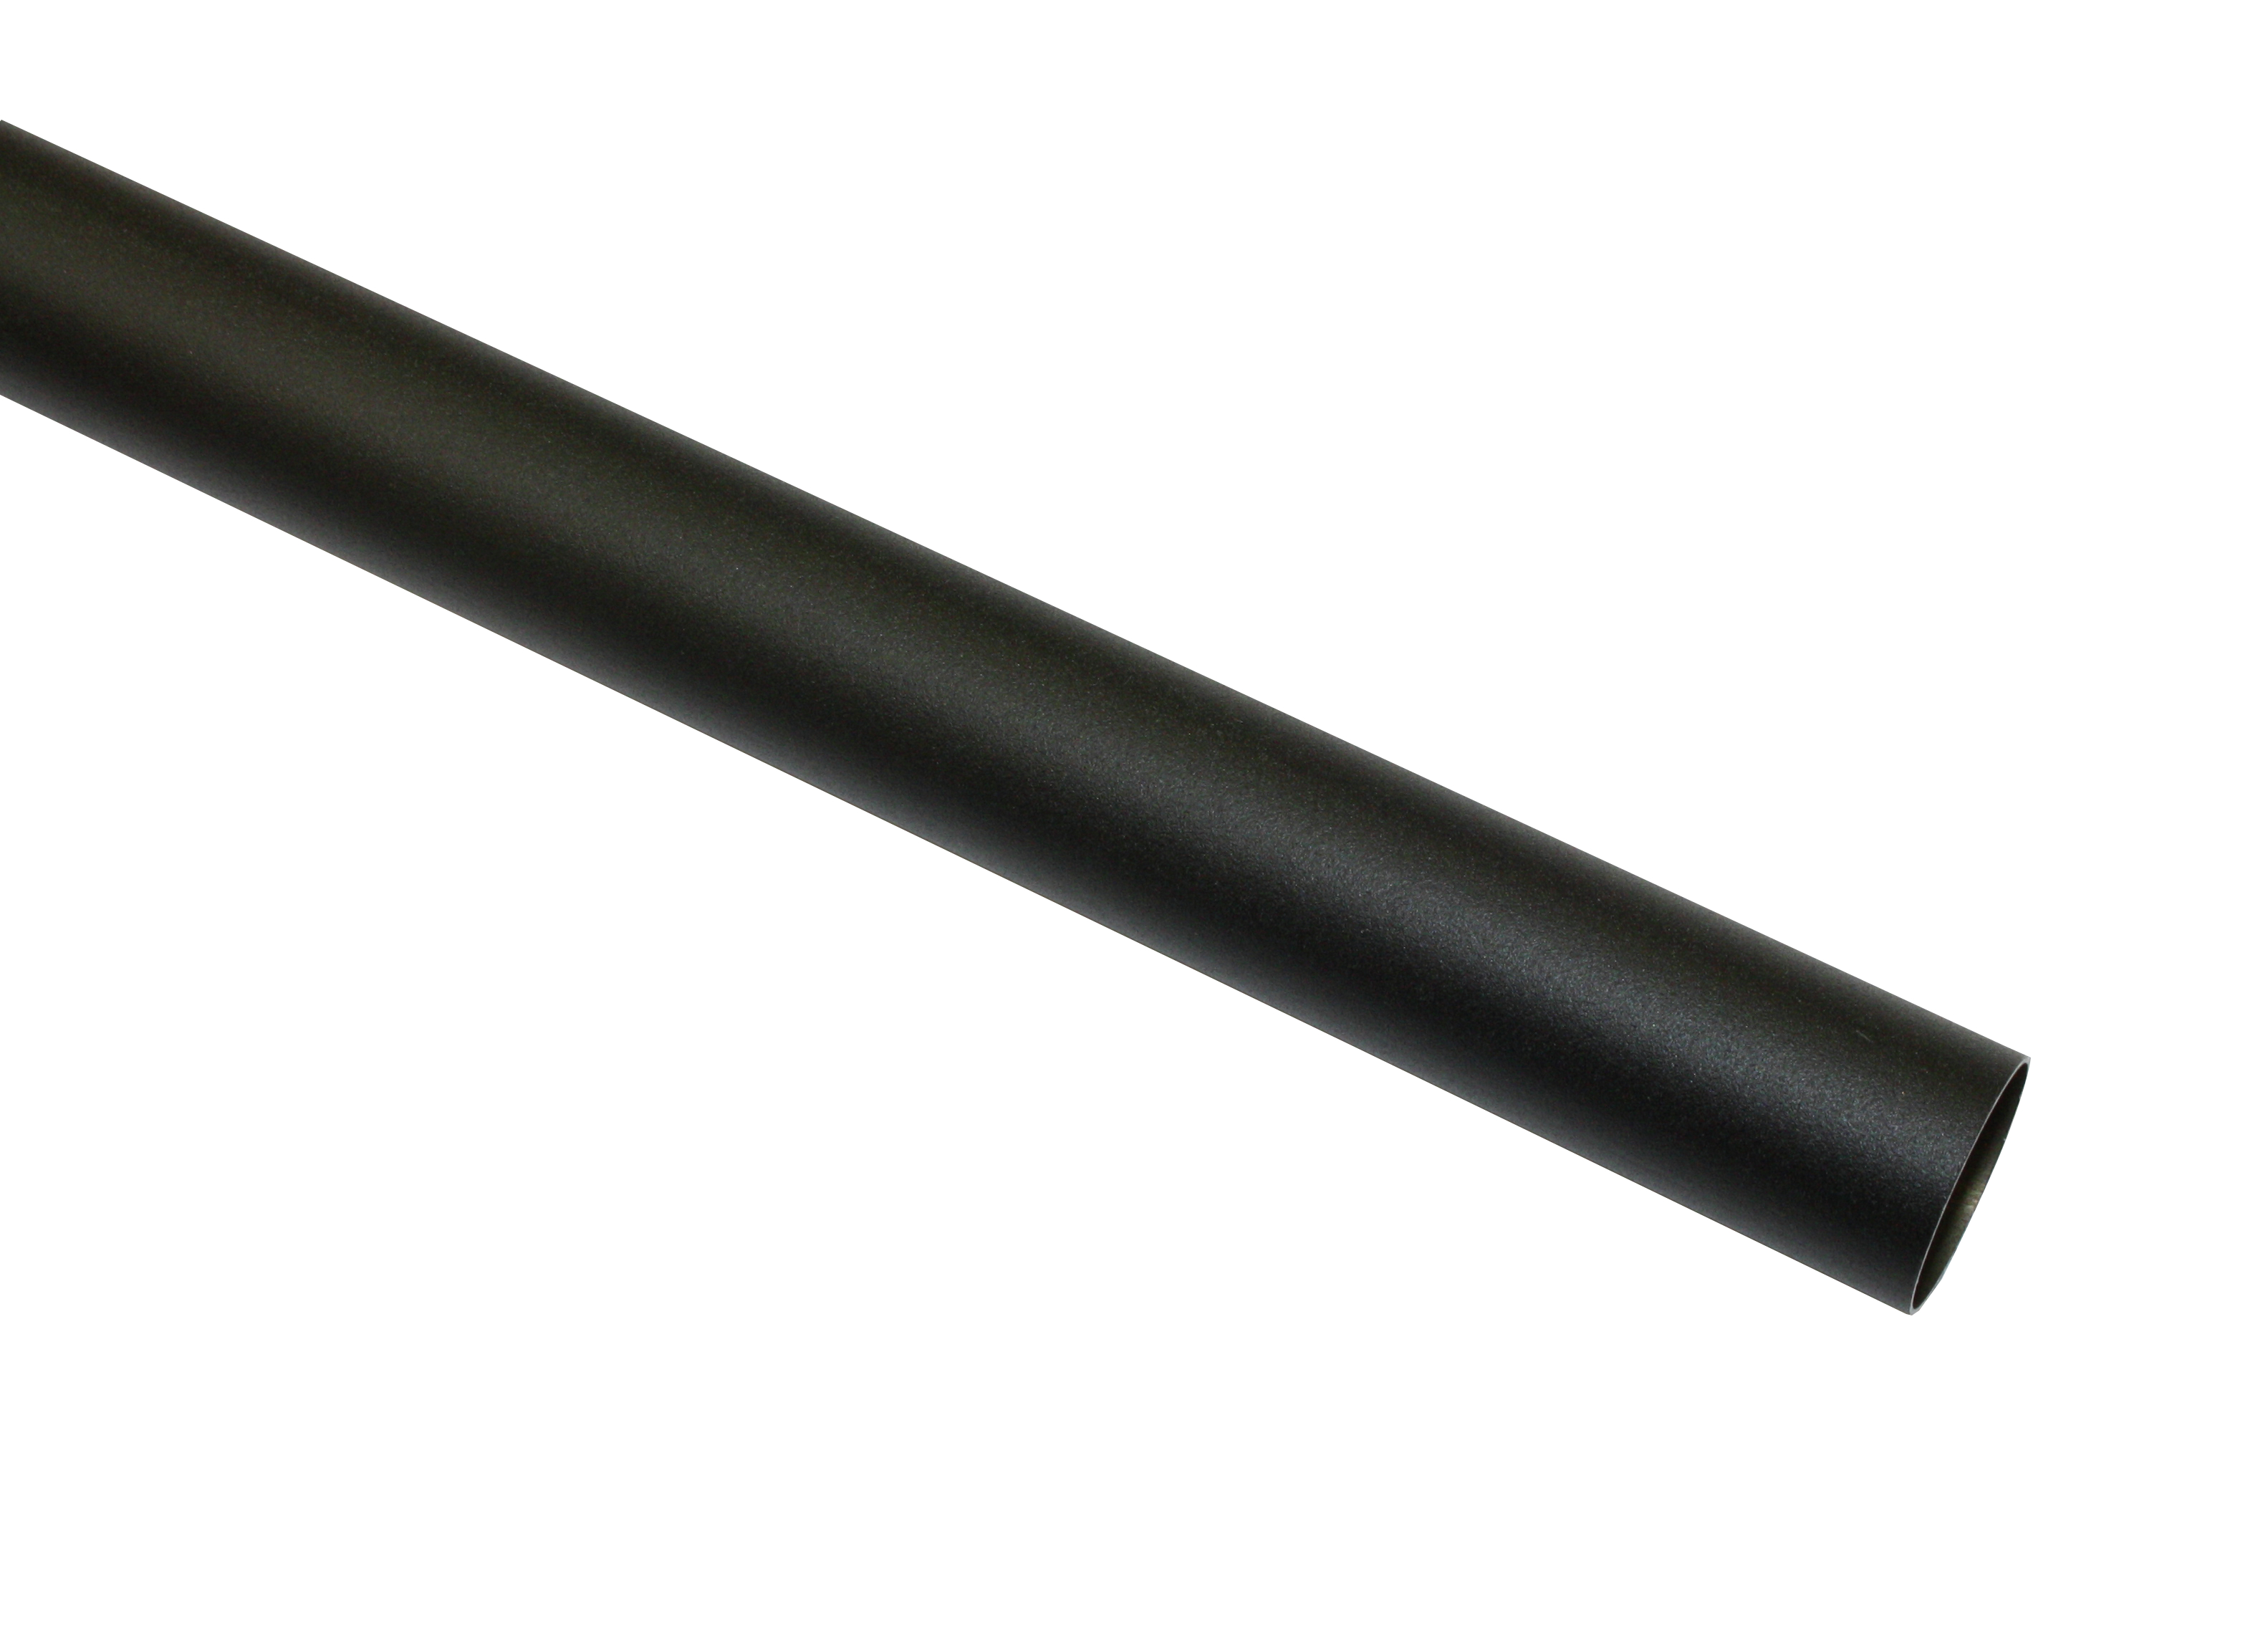 Záclonová tyč Industrial Home 25/200cm, černá (Kov, od délky tyče 200cm doporučujeme použít třetí nosník.)